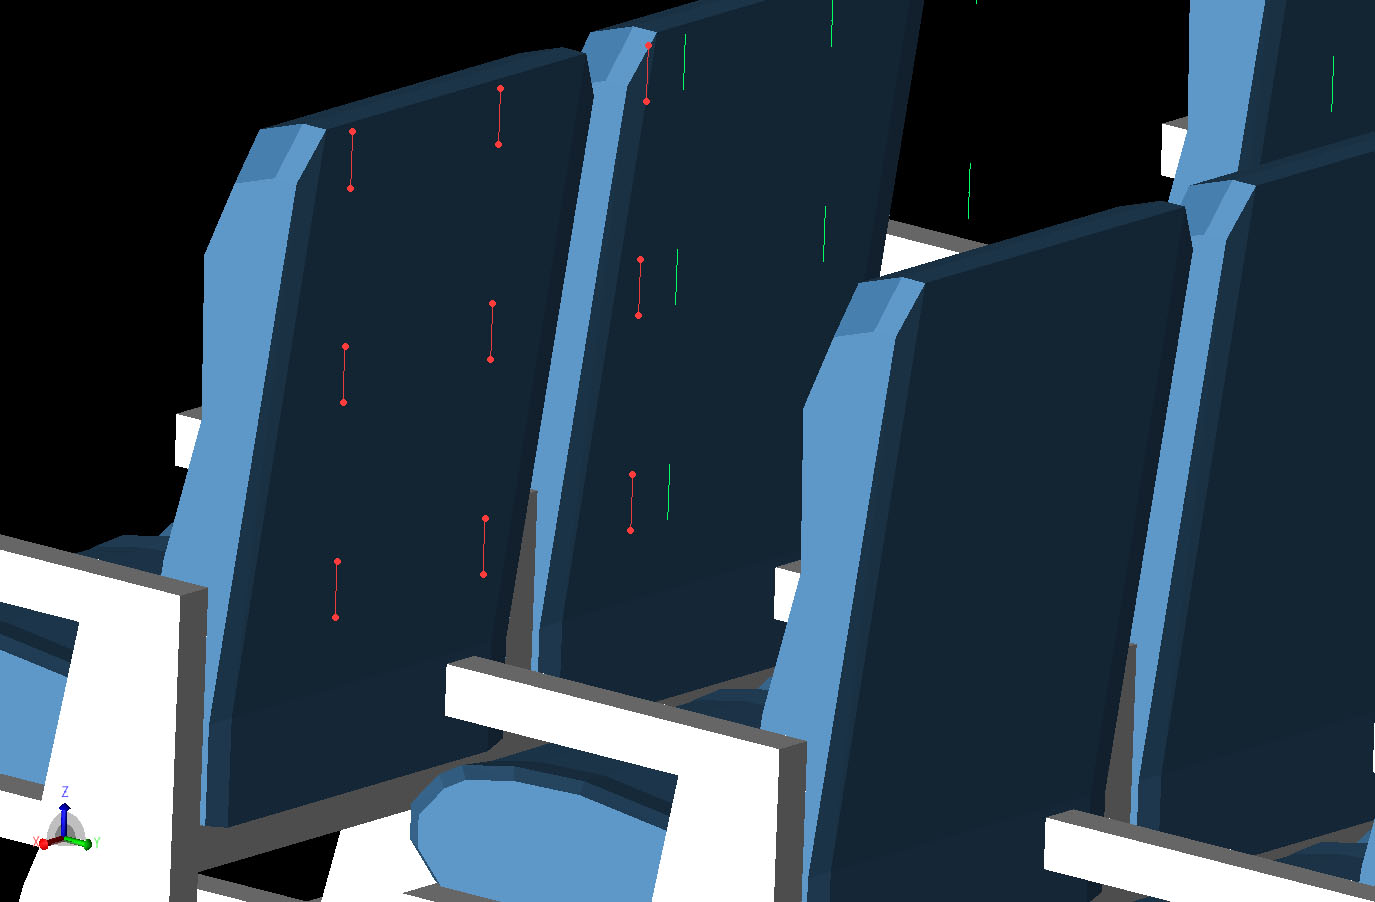 图 3 3x3 网格的传感器位置定义为偶极子，显示在其中一个座椅靠背位置的后面。在车厢的前三列座椅中，每隔一排座椅后都有一个传感器网格。